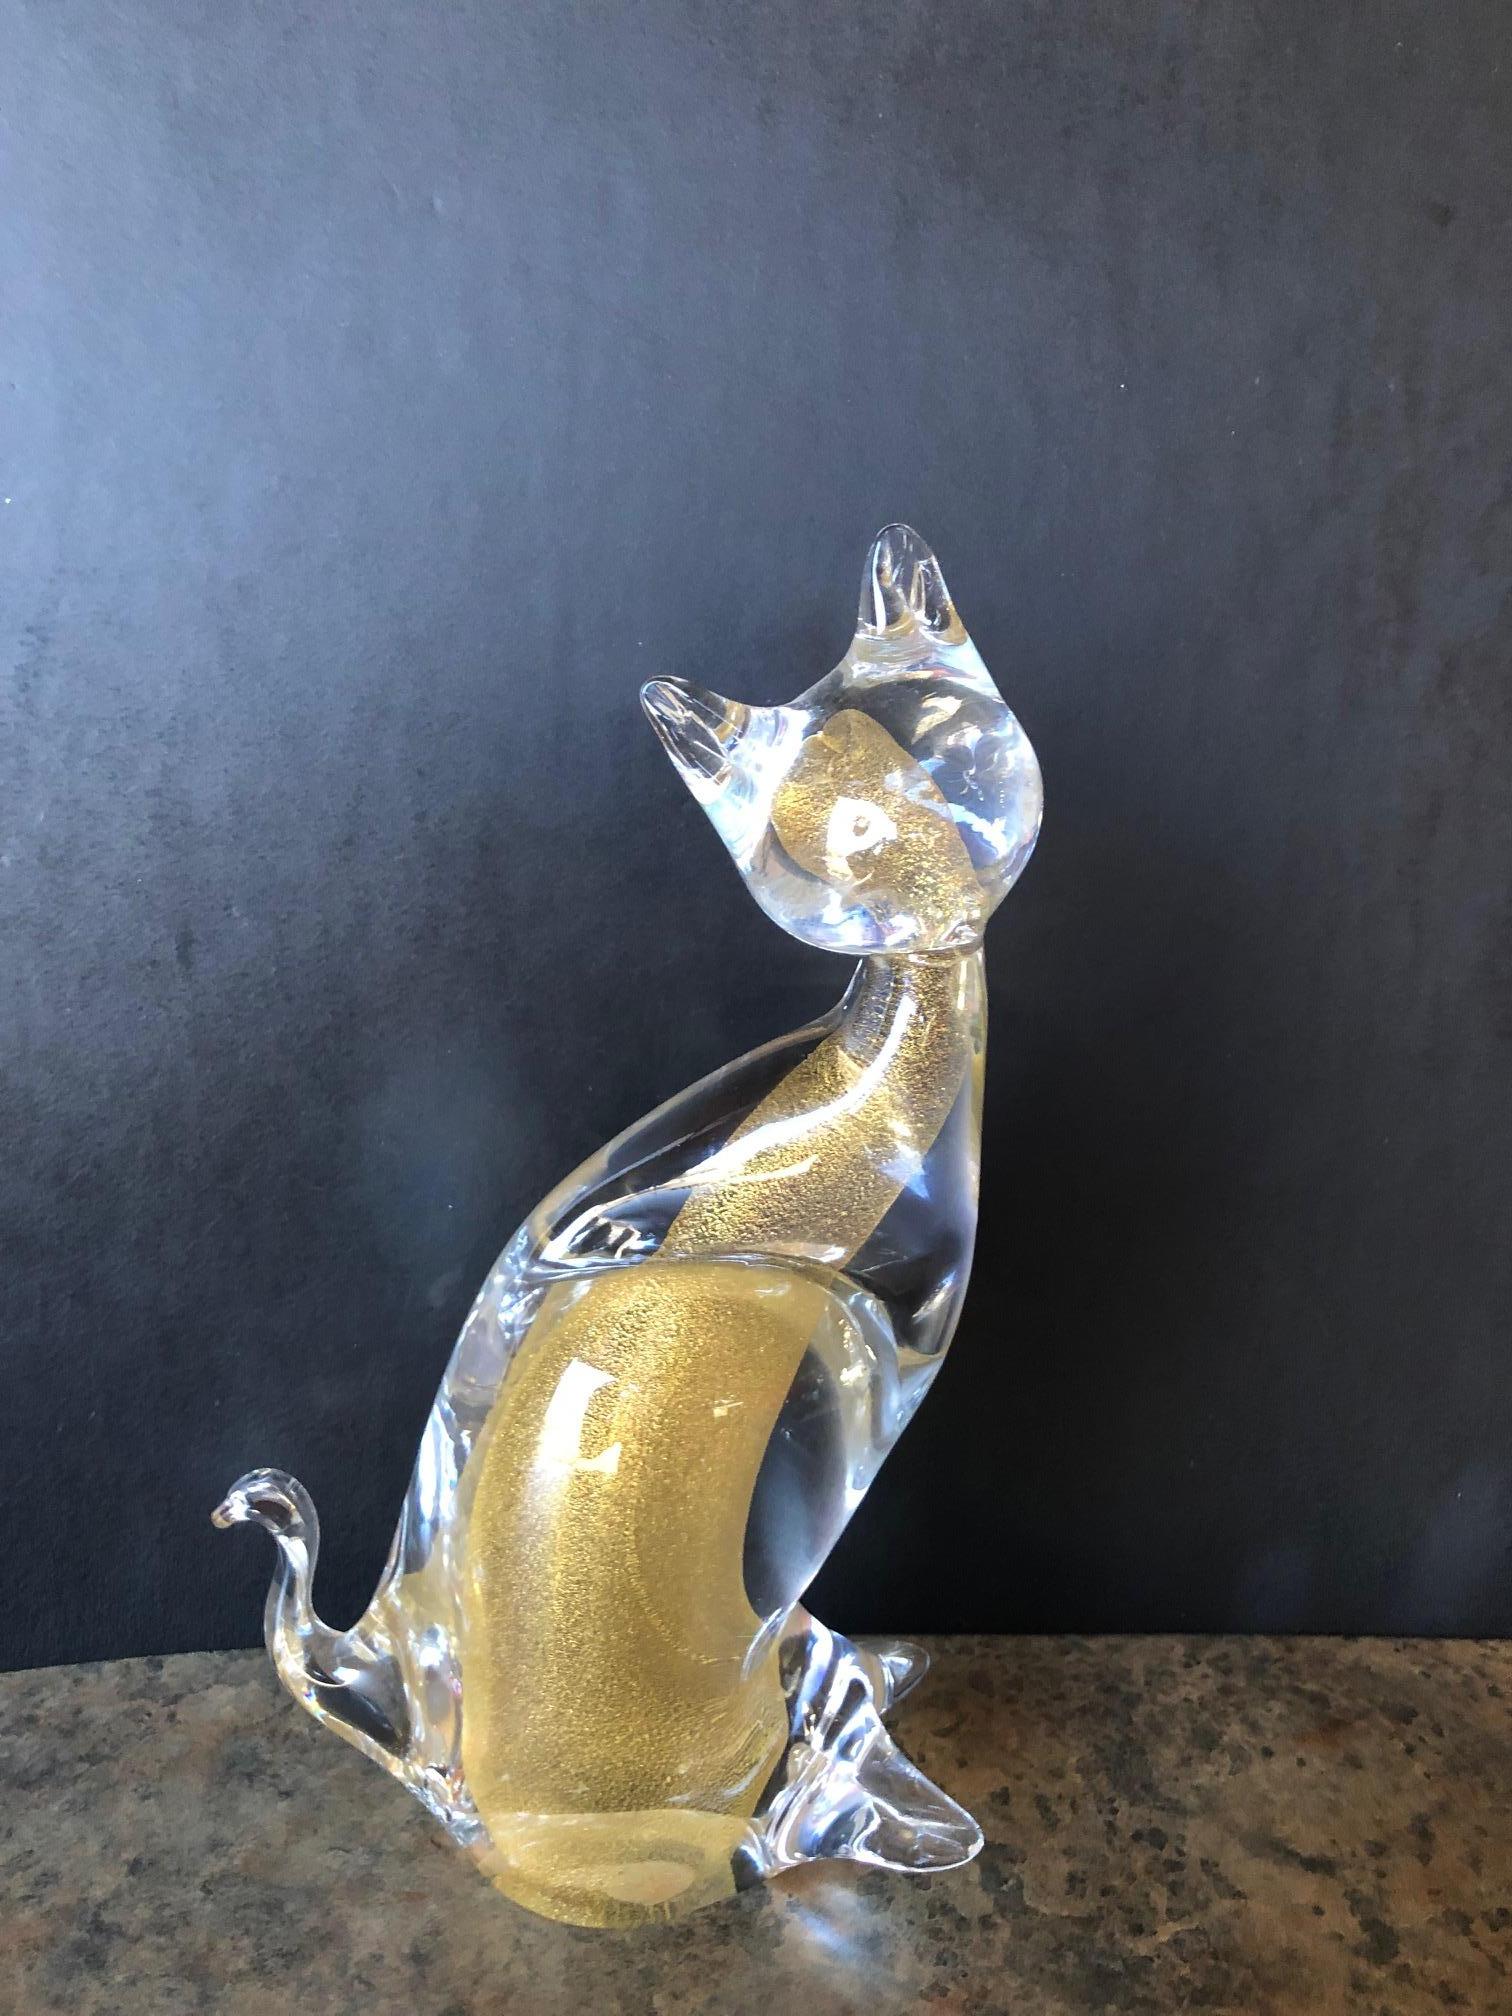 Eine sehr schöne Sommerso Kunstglas Katze Skulptur von Murano. circa 1980er Jahre. Der Umriss der Skulptur besteht aus klarem, mundgeblasenem Glas mit einem schimmernden, goldglänzenden Innenkern. Ein tolles Dekostück und ein Muss für jeden